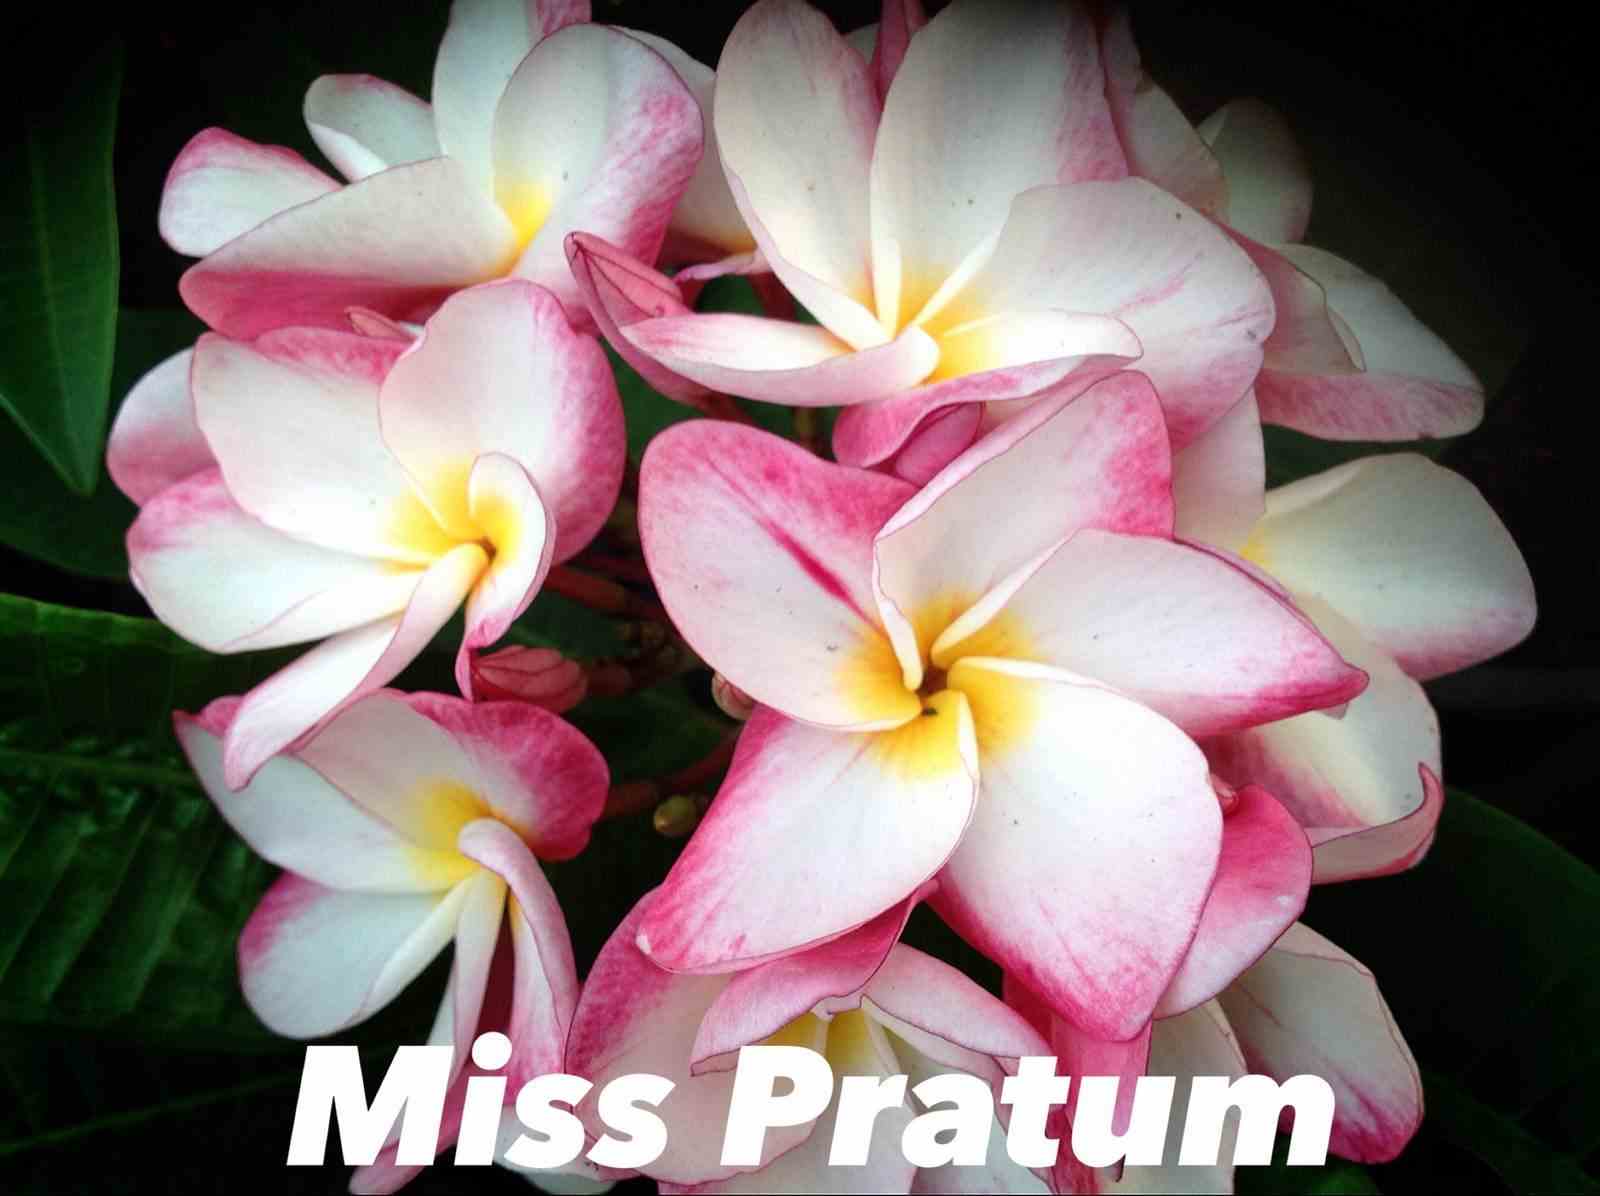 Plumeria rubra "miss pratum" (frangipanier) taille pot de 2 litres ? 20/30 cm -   tricolor